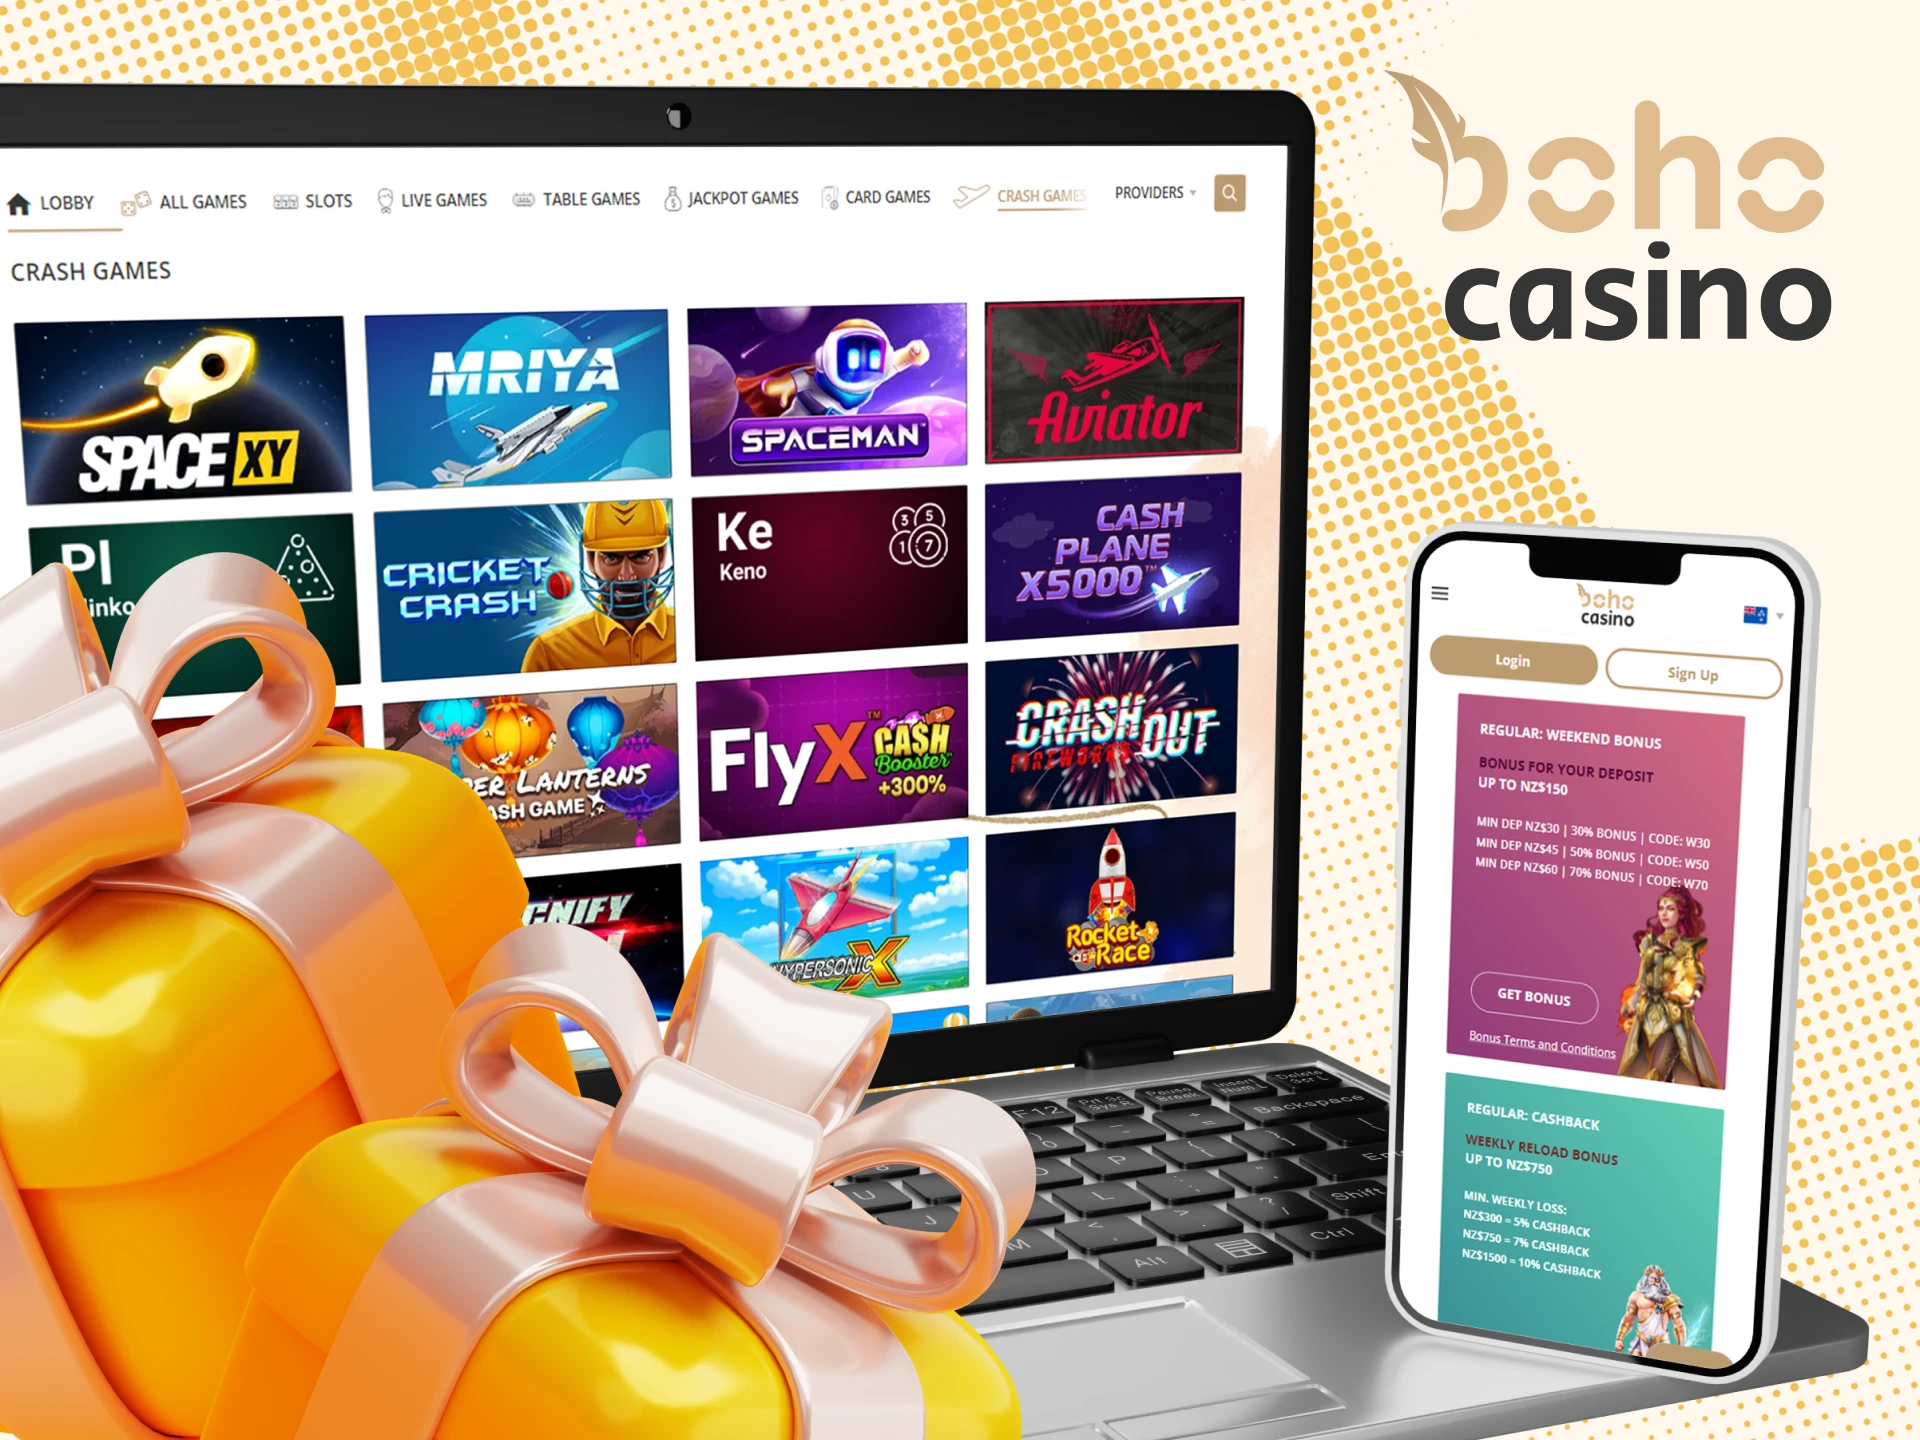 Boho Casino offers bonuses and promo codes for crash games.